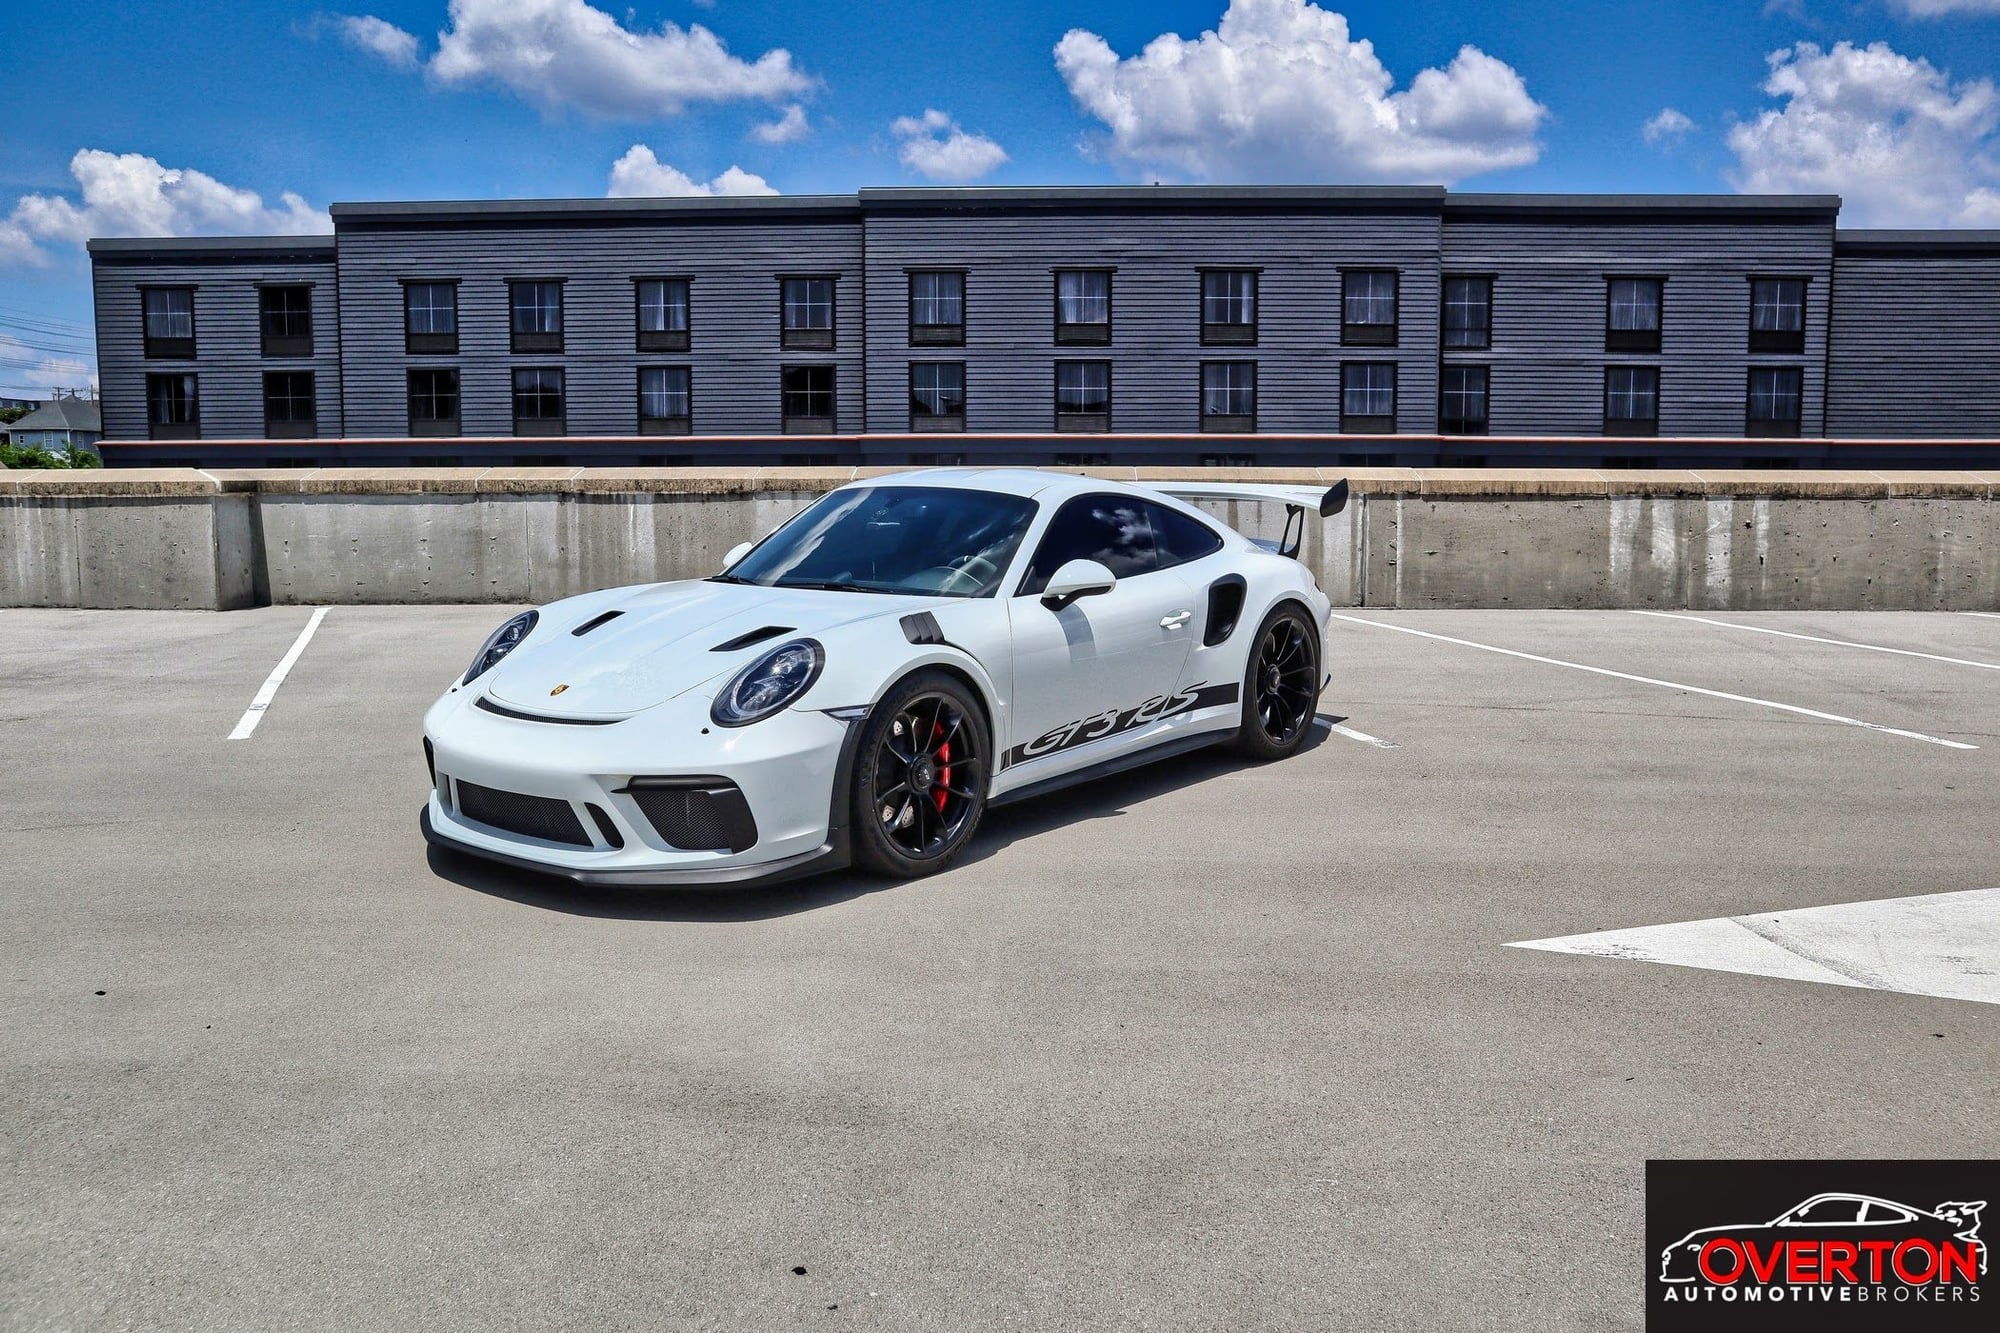 2019 Porsche GT3 RS in White - 6SpeedOnline - Porsche Forum and Luxury